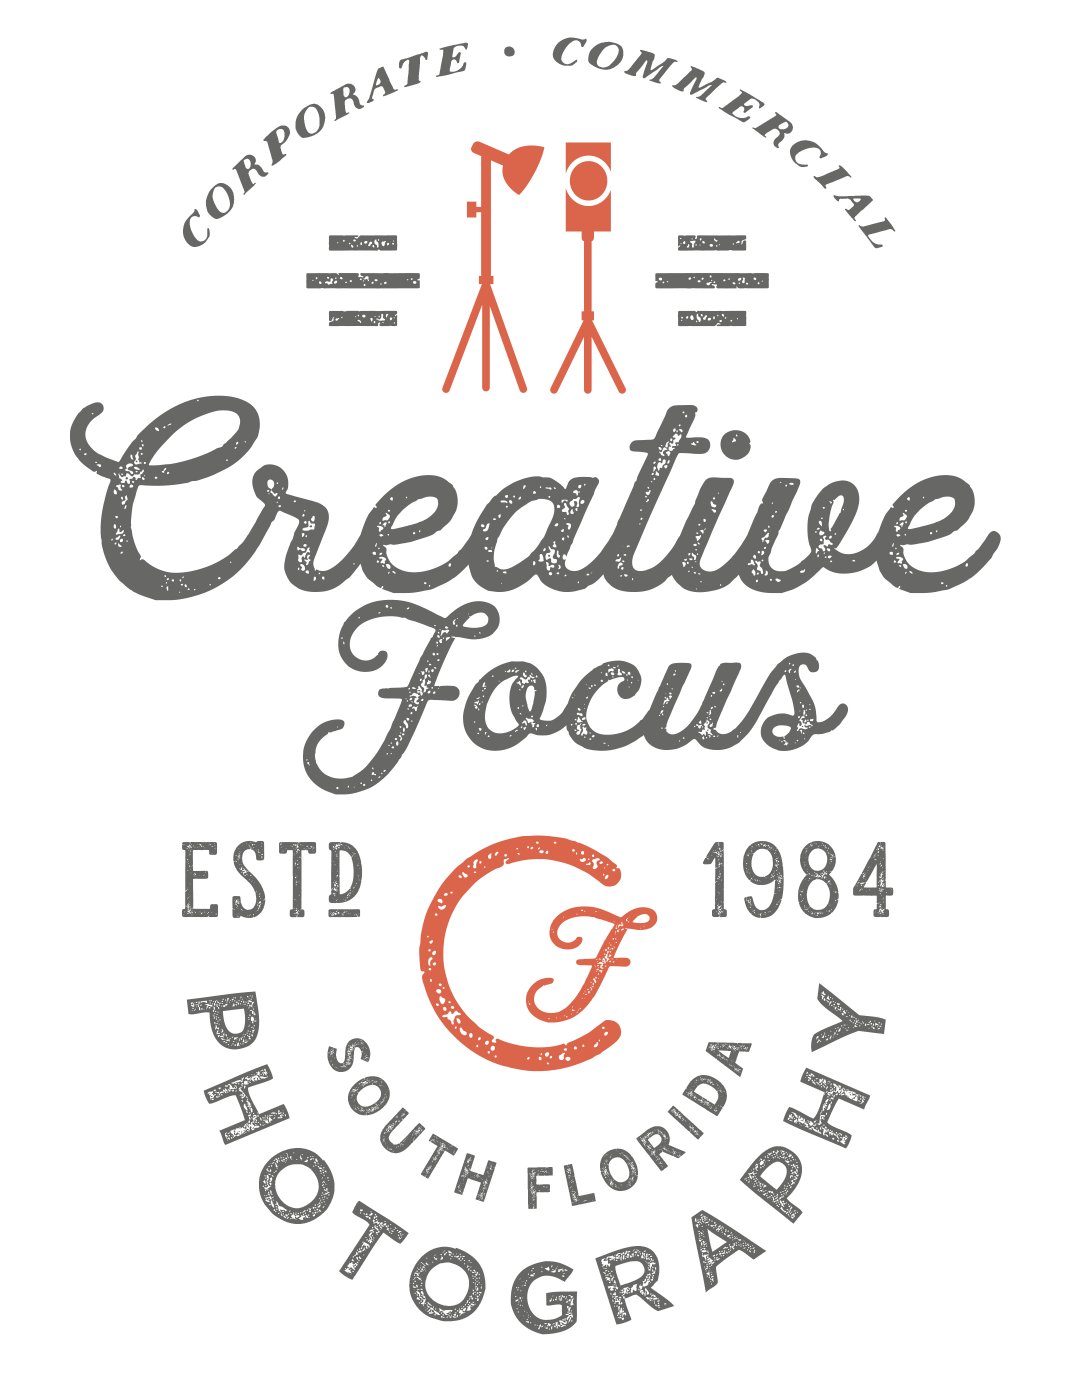 Creative Focus